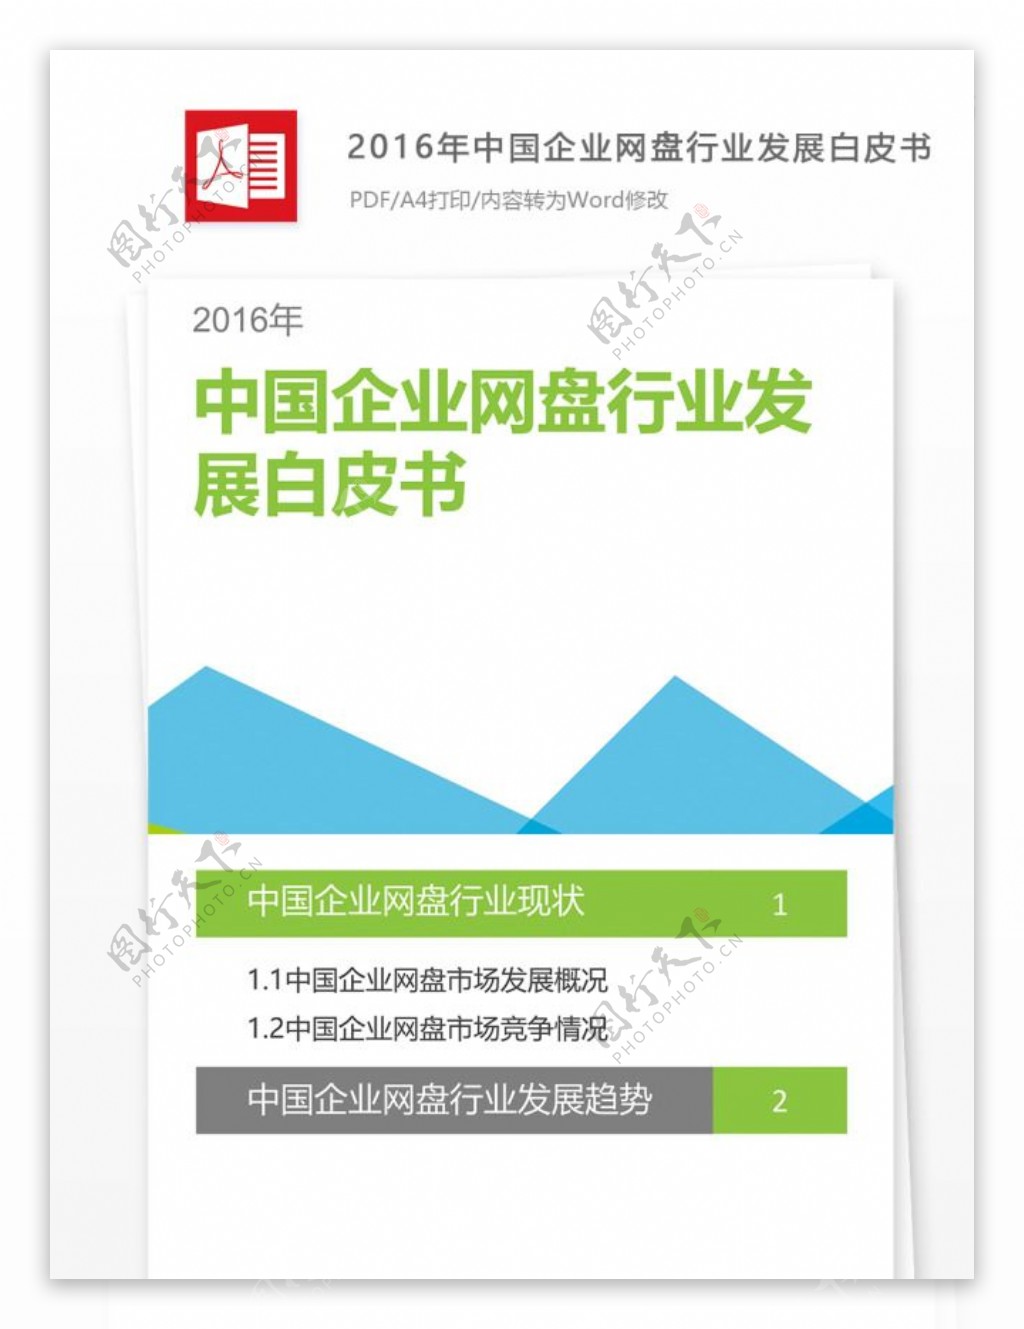 2016年中国企业网盘行业发展白皮书